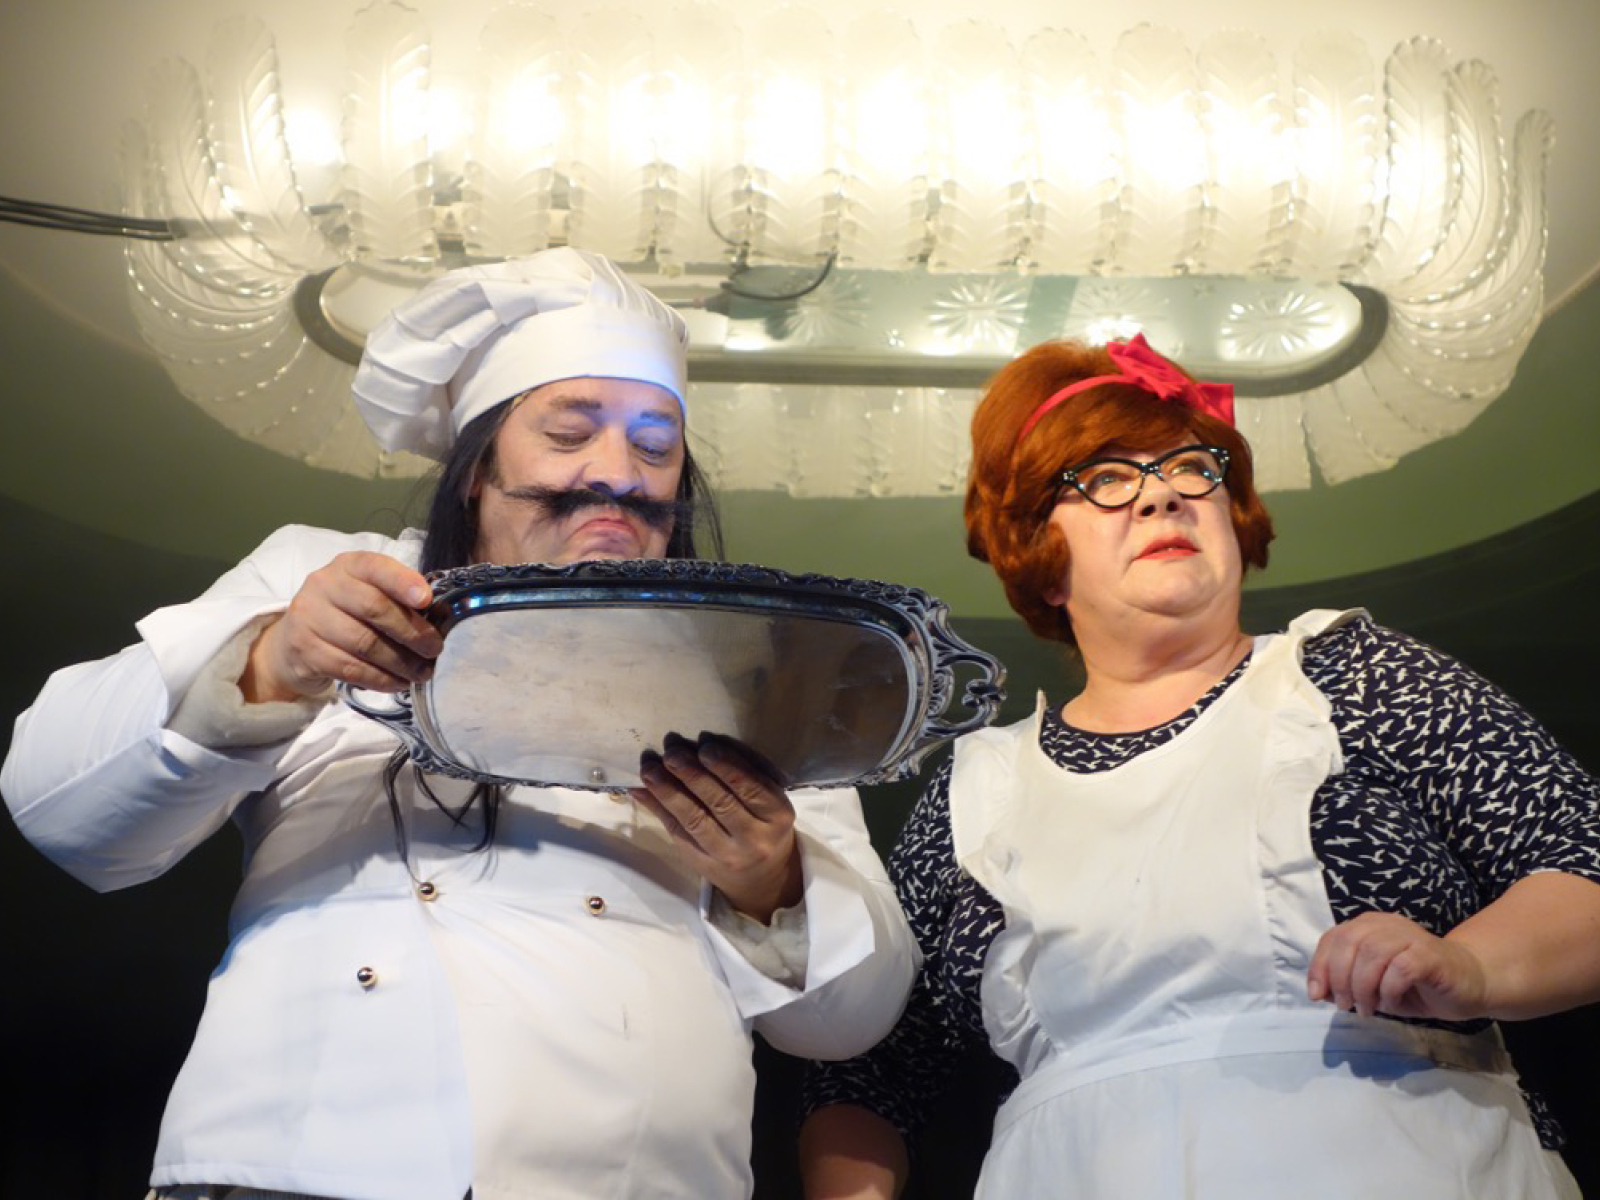 Koch mit Kochmütze und Schnurrbart schaut auf eine Silberplatte. Neben ihm eine rothaarige Frau mit Brille und weißer Schürze. Beide sind etwa 50 Jahre alt.